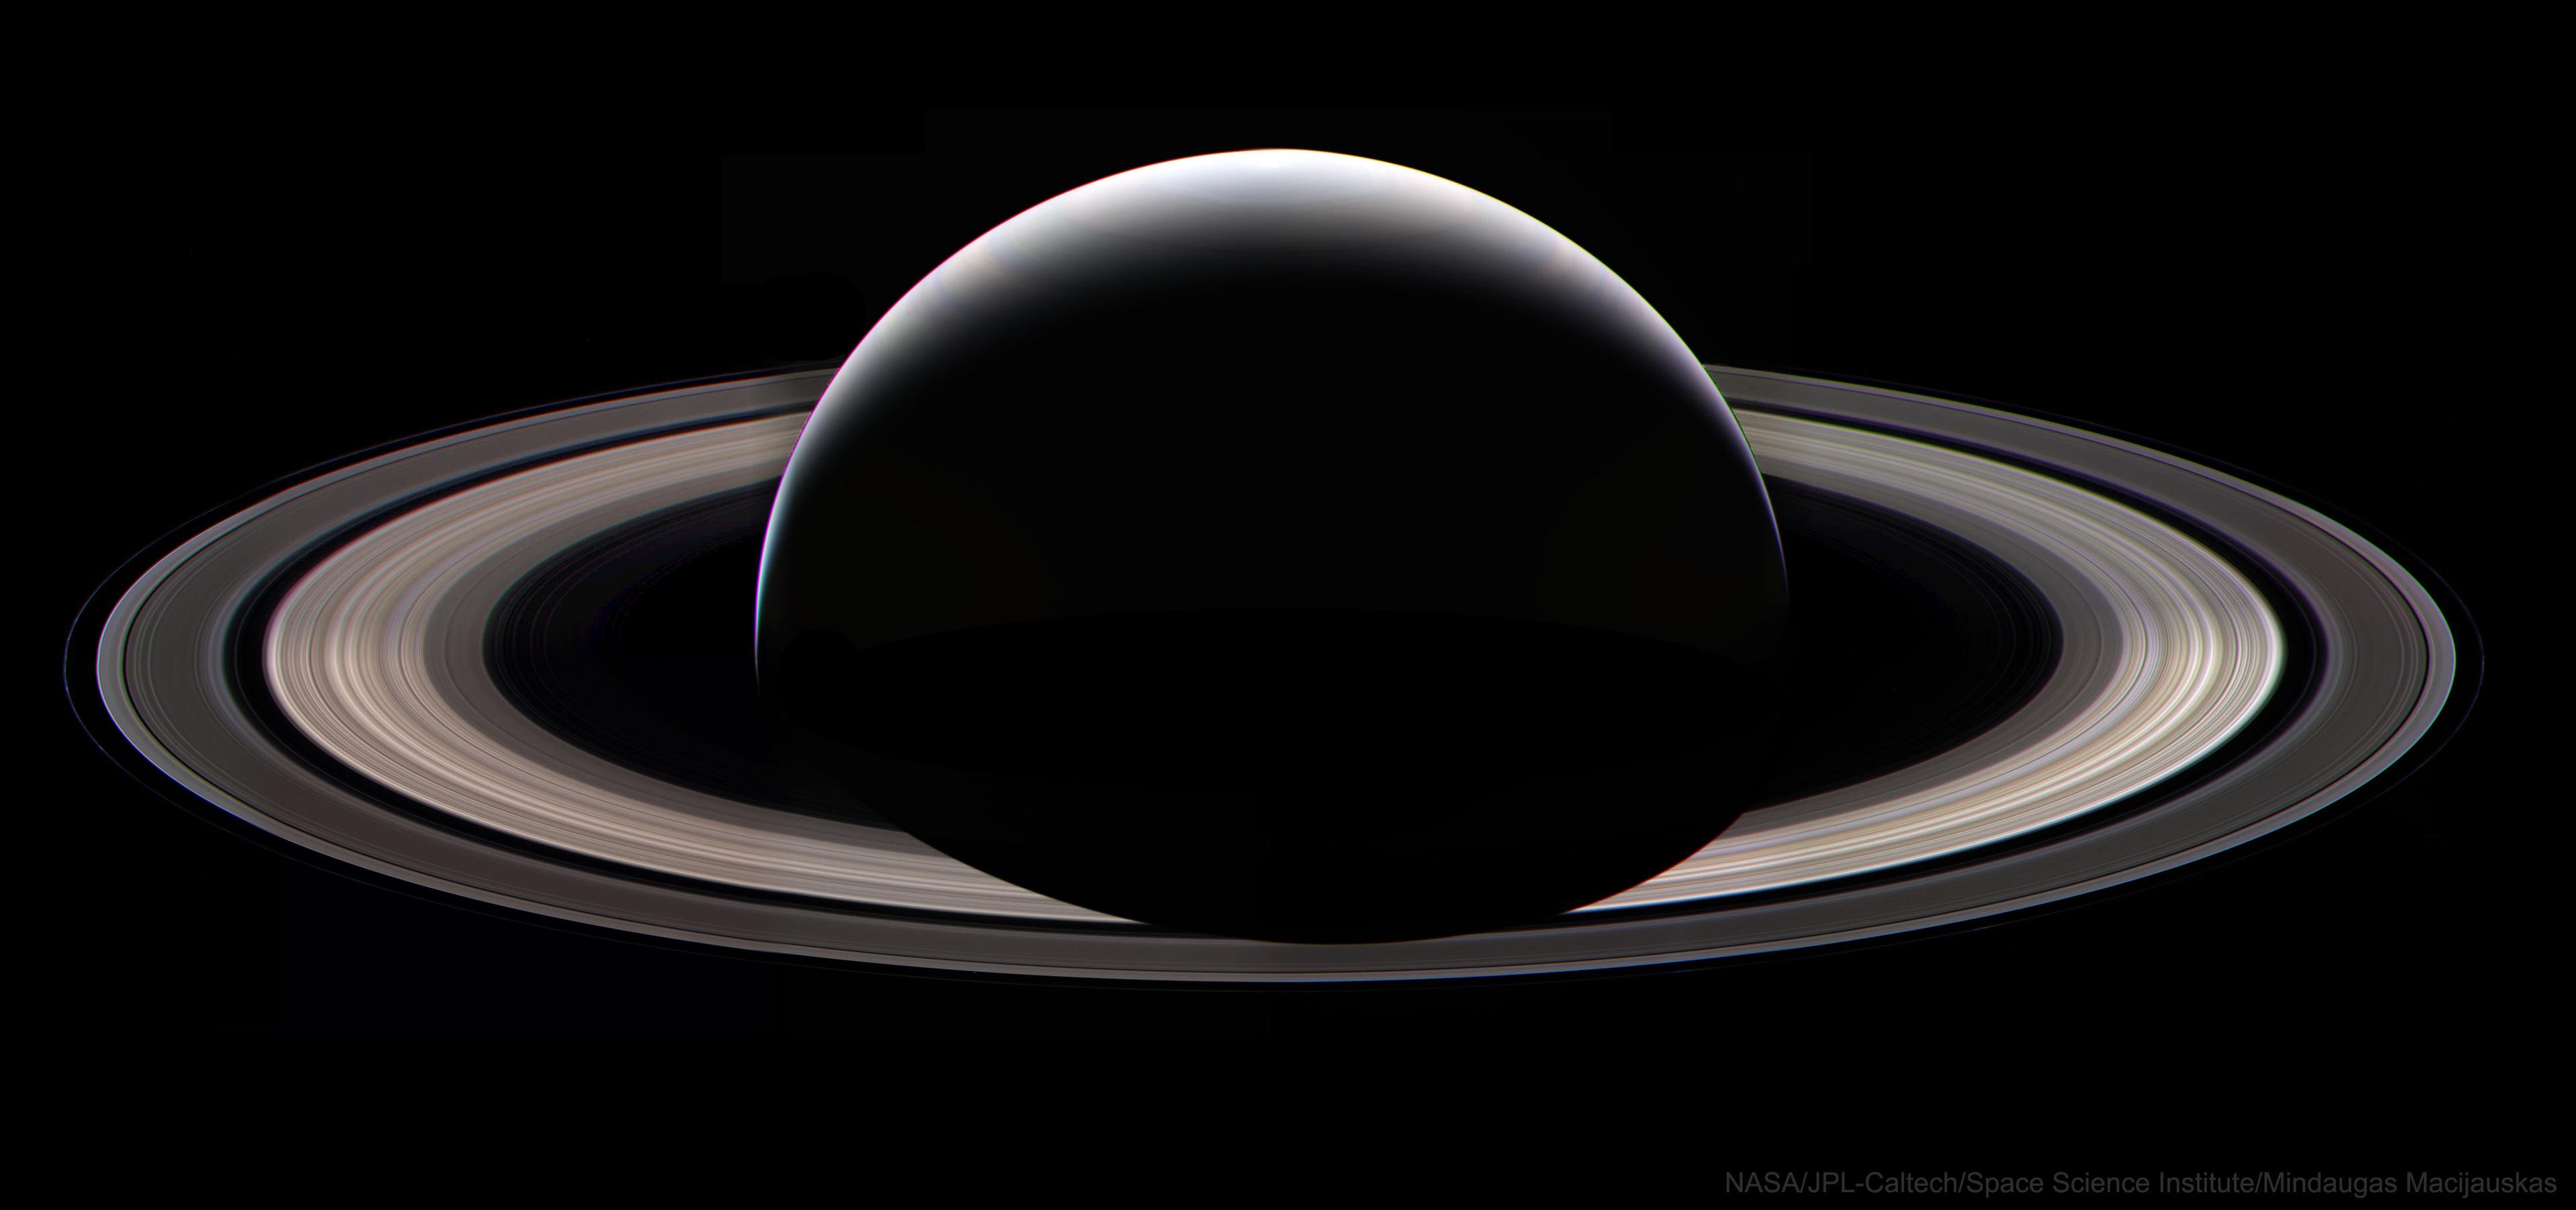 صورة للجانب الليلي لكوكب زُحل وحلقاته يظهر فيها كهلال رشيق التقطتها مركبة "كاسيني".